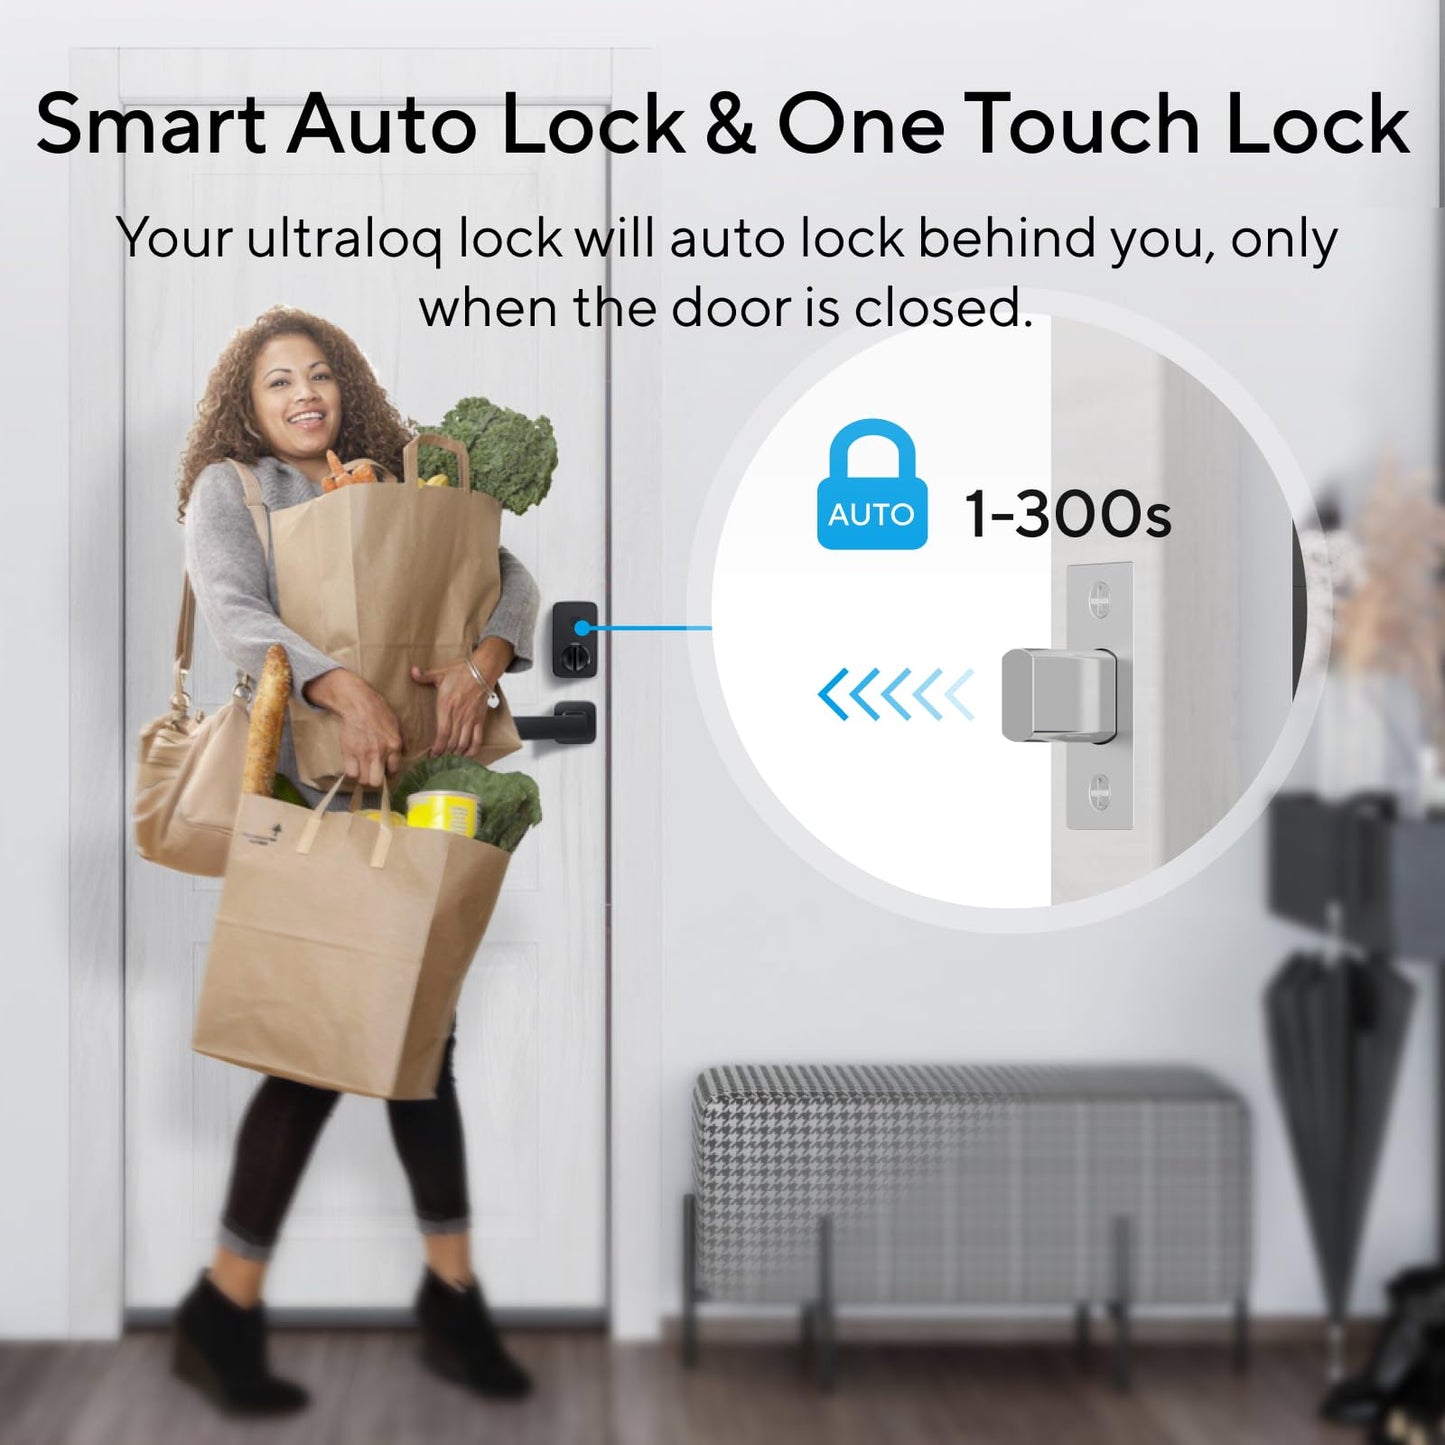 ULTRALOQ U-Bolt Pro WiFi Smart Lock with Door Sensor, 8-in-1 Keyless Entry Door Lock with Built-in WiFi,Fingerprint ID,App Remote Control,Auto Unlock,Door Status Alert,WiFi Deadbolt Door Lock